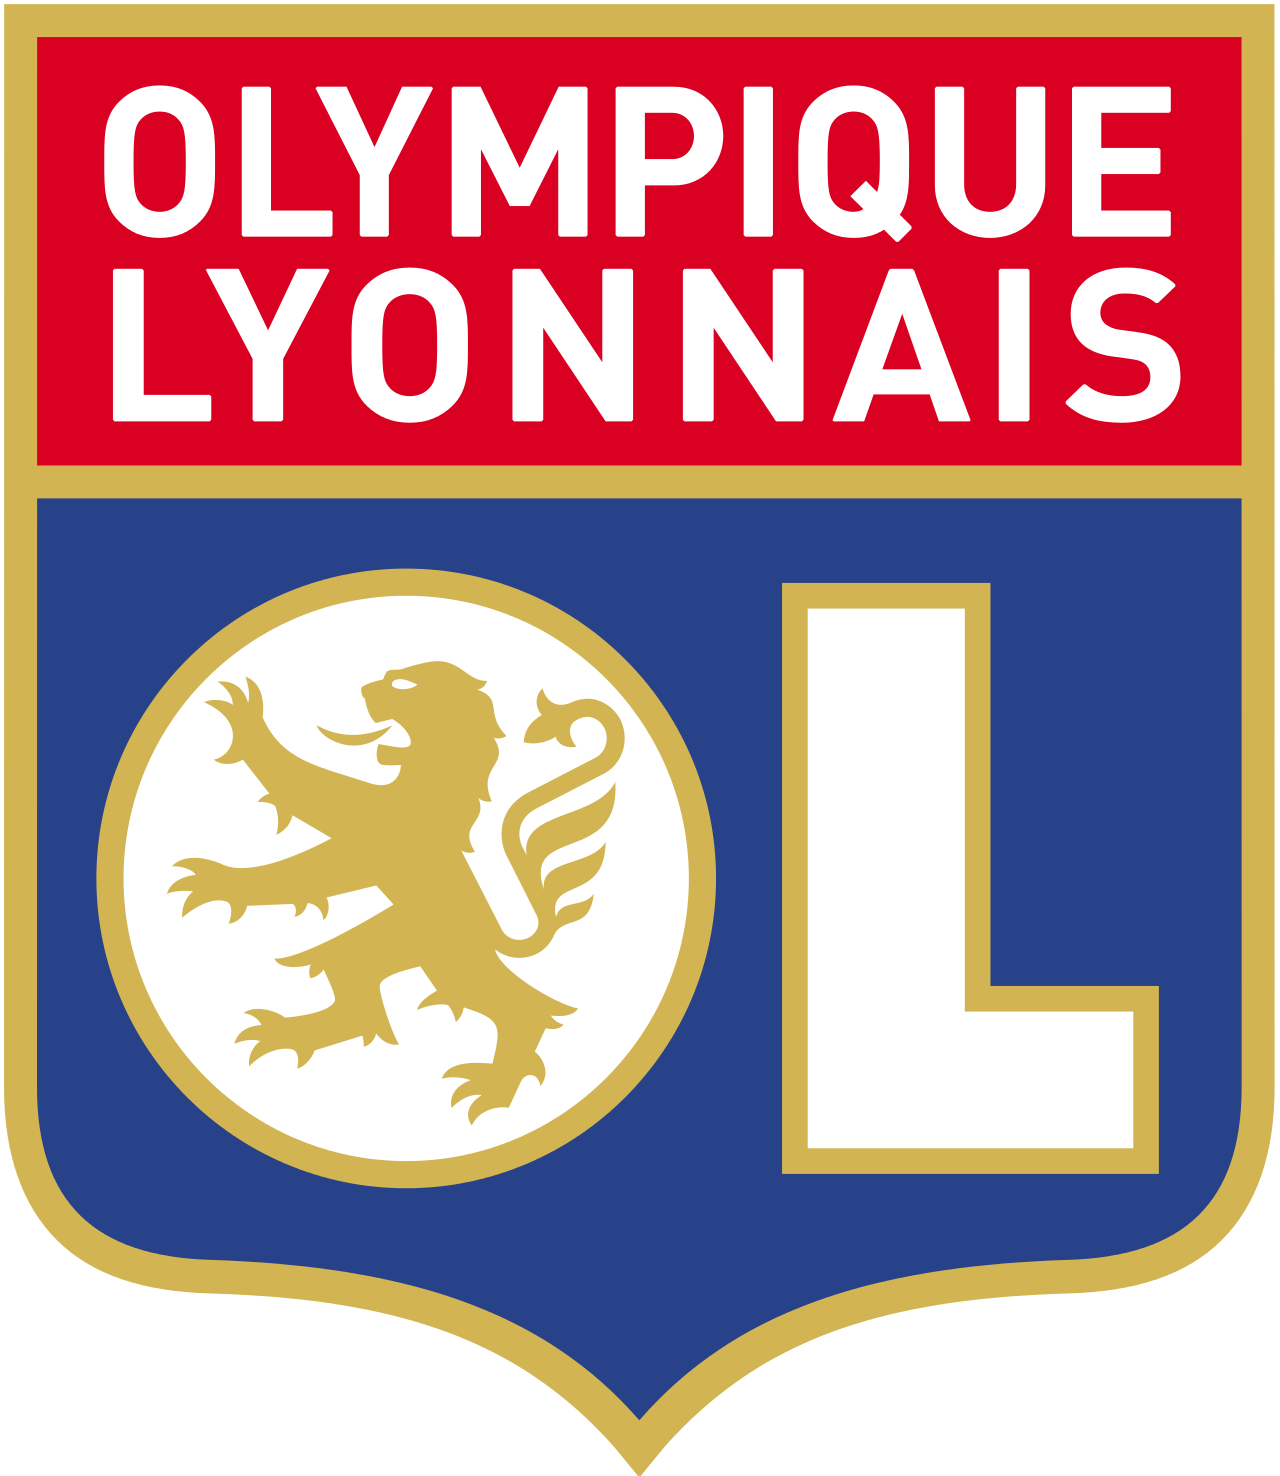 Olympique Lyonnais Blank Meme Template